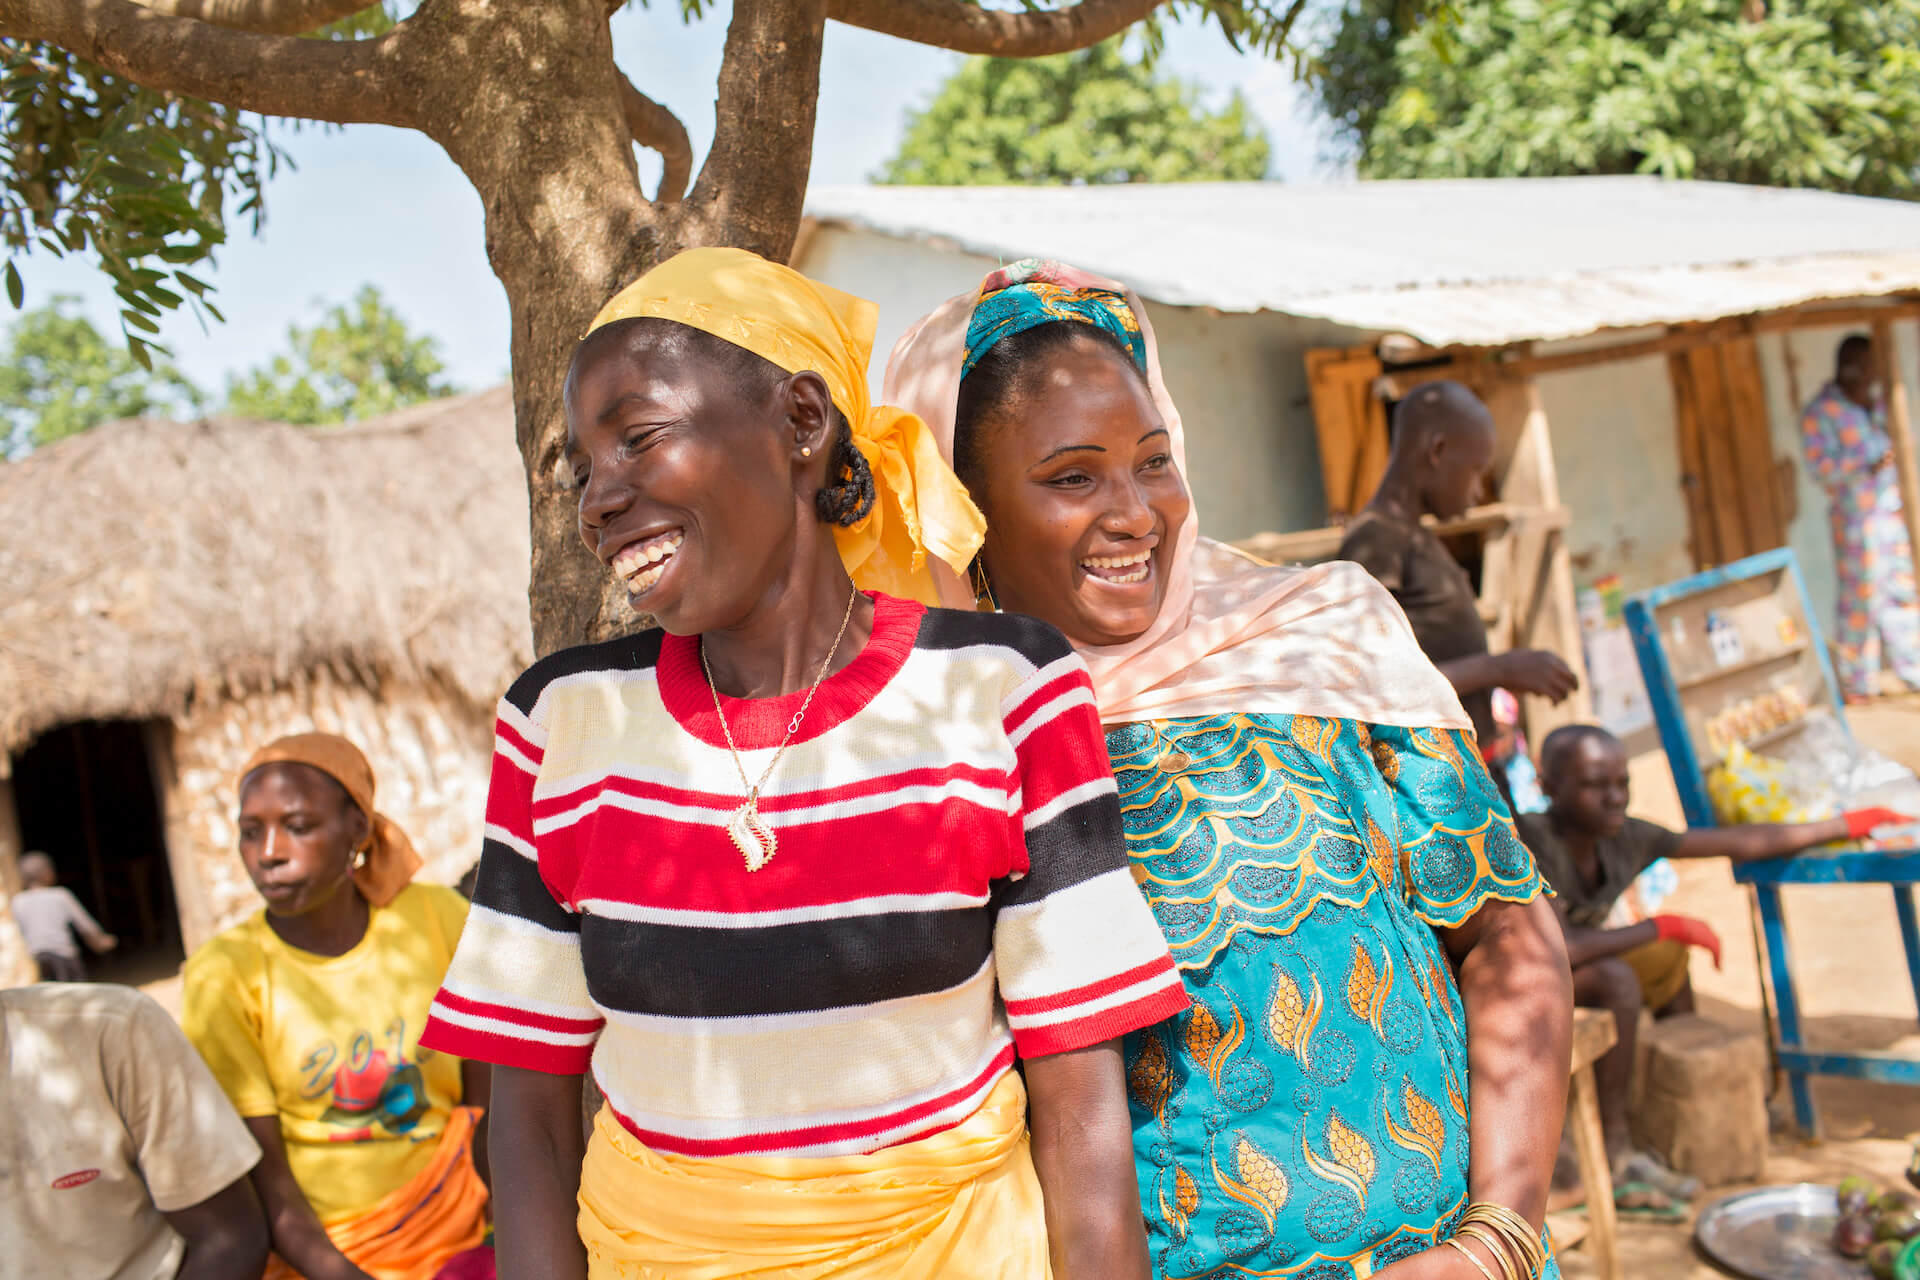 Au Cameroun, ONU Femmes travaille avec les communautés qui accueillent des camps de réfugiés, formant des femmes locales au petit commerce, à la transformation des aliments, à la couture, à la fabrication de savon, à la gestion de projets et à l'entrepreneuriat. 